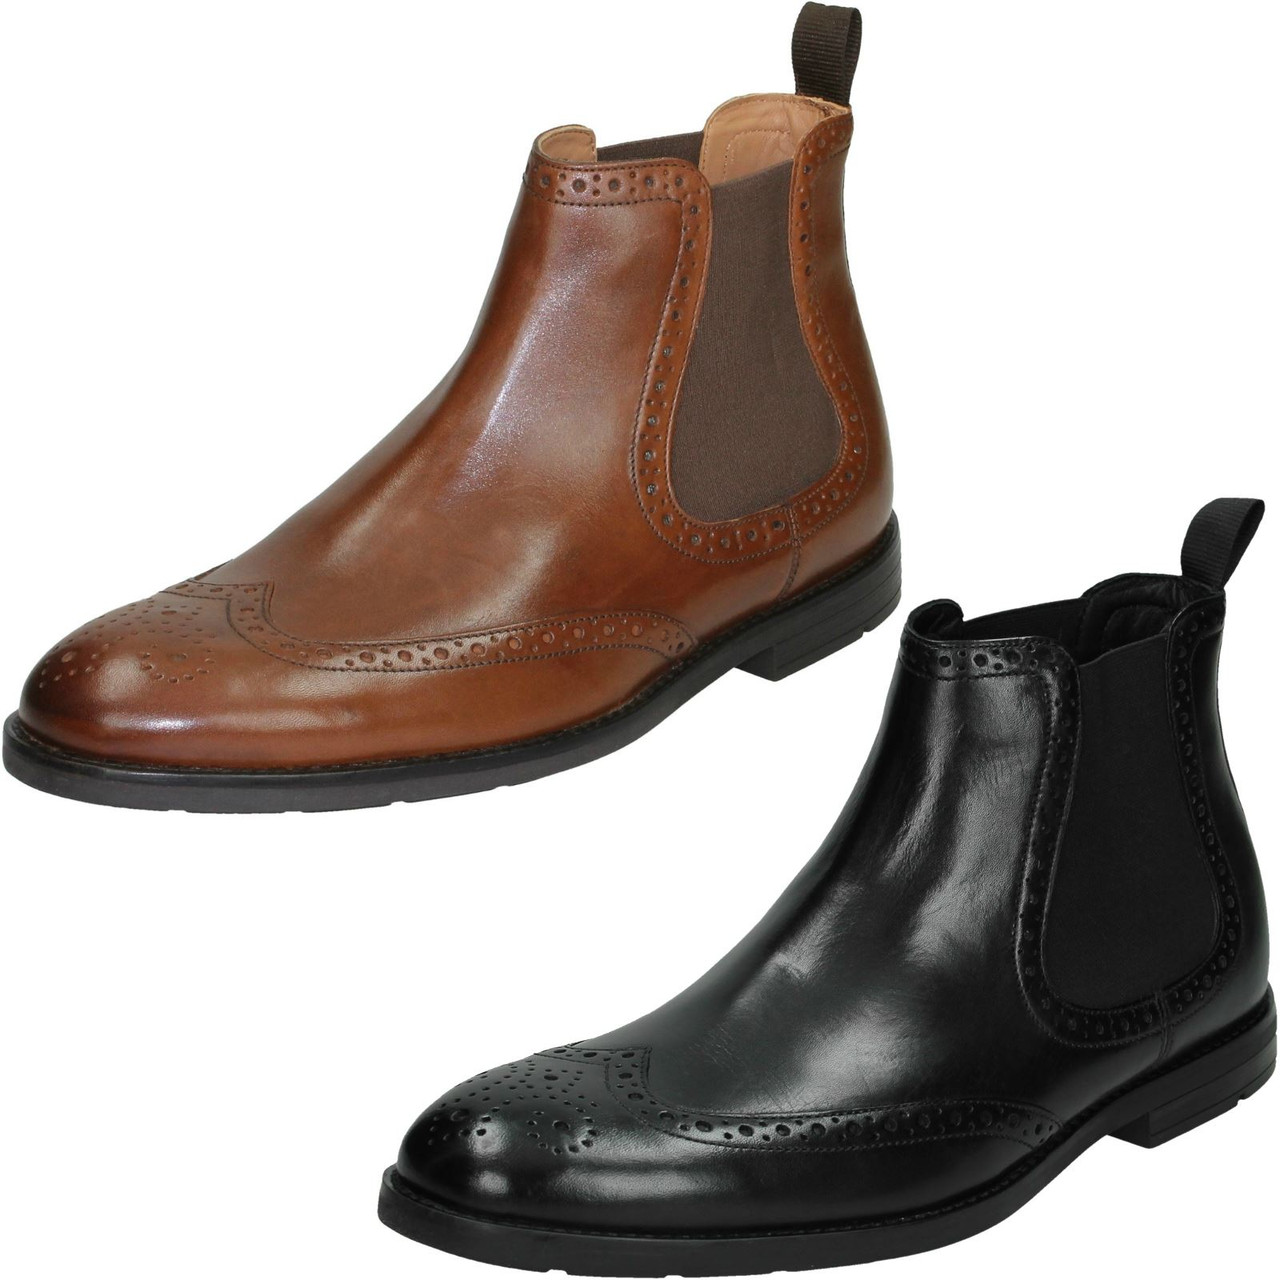 clarks shoe boots